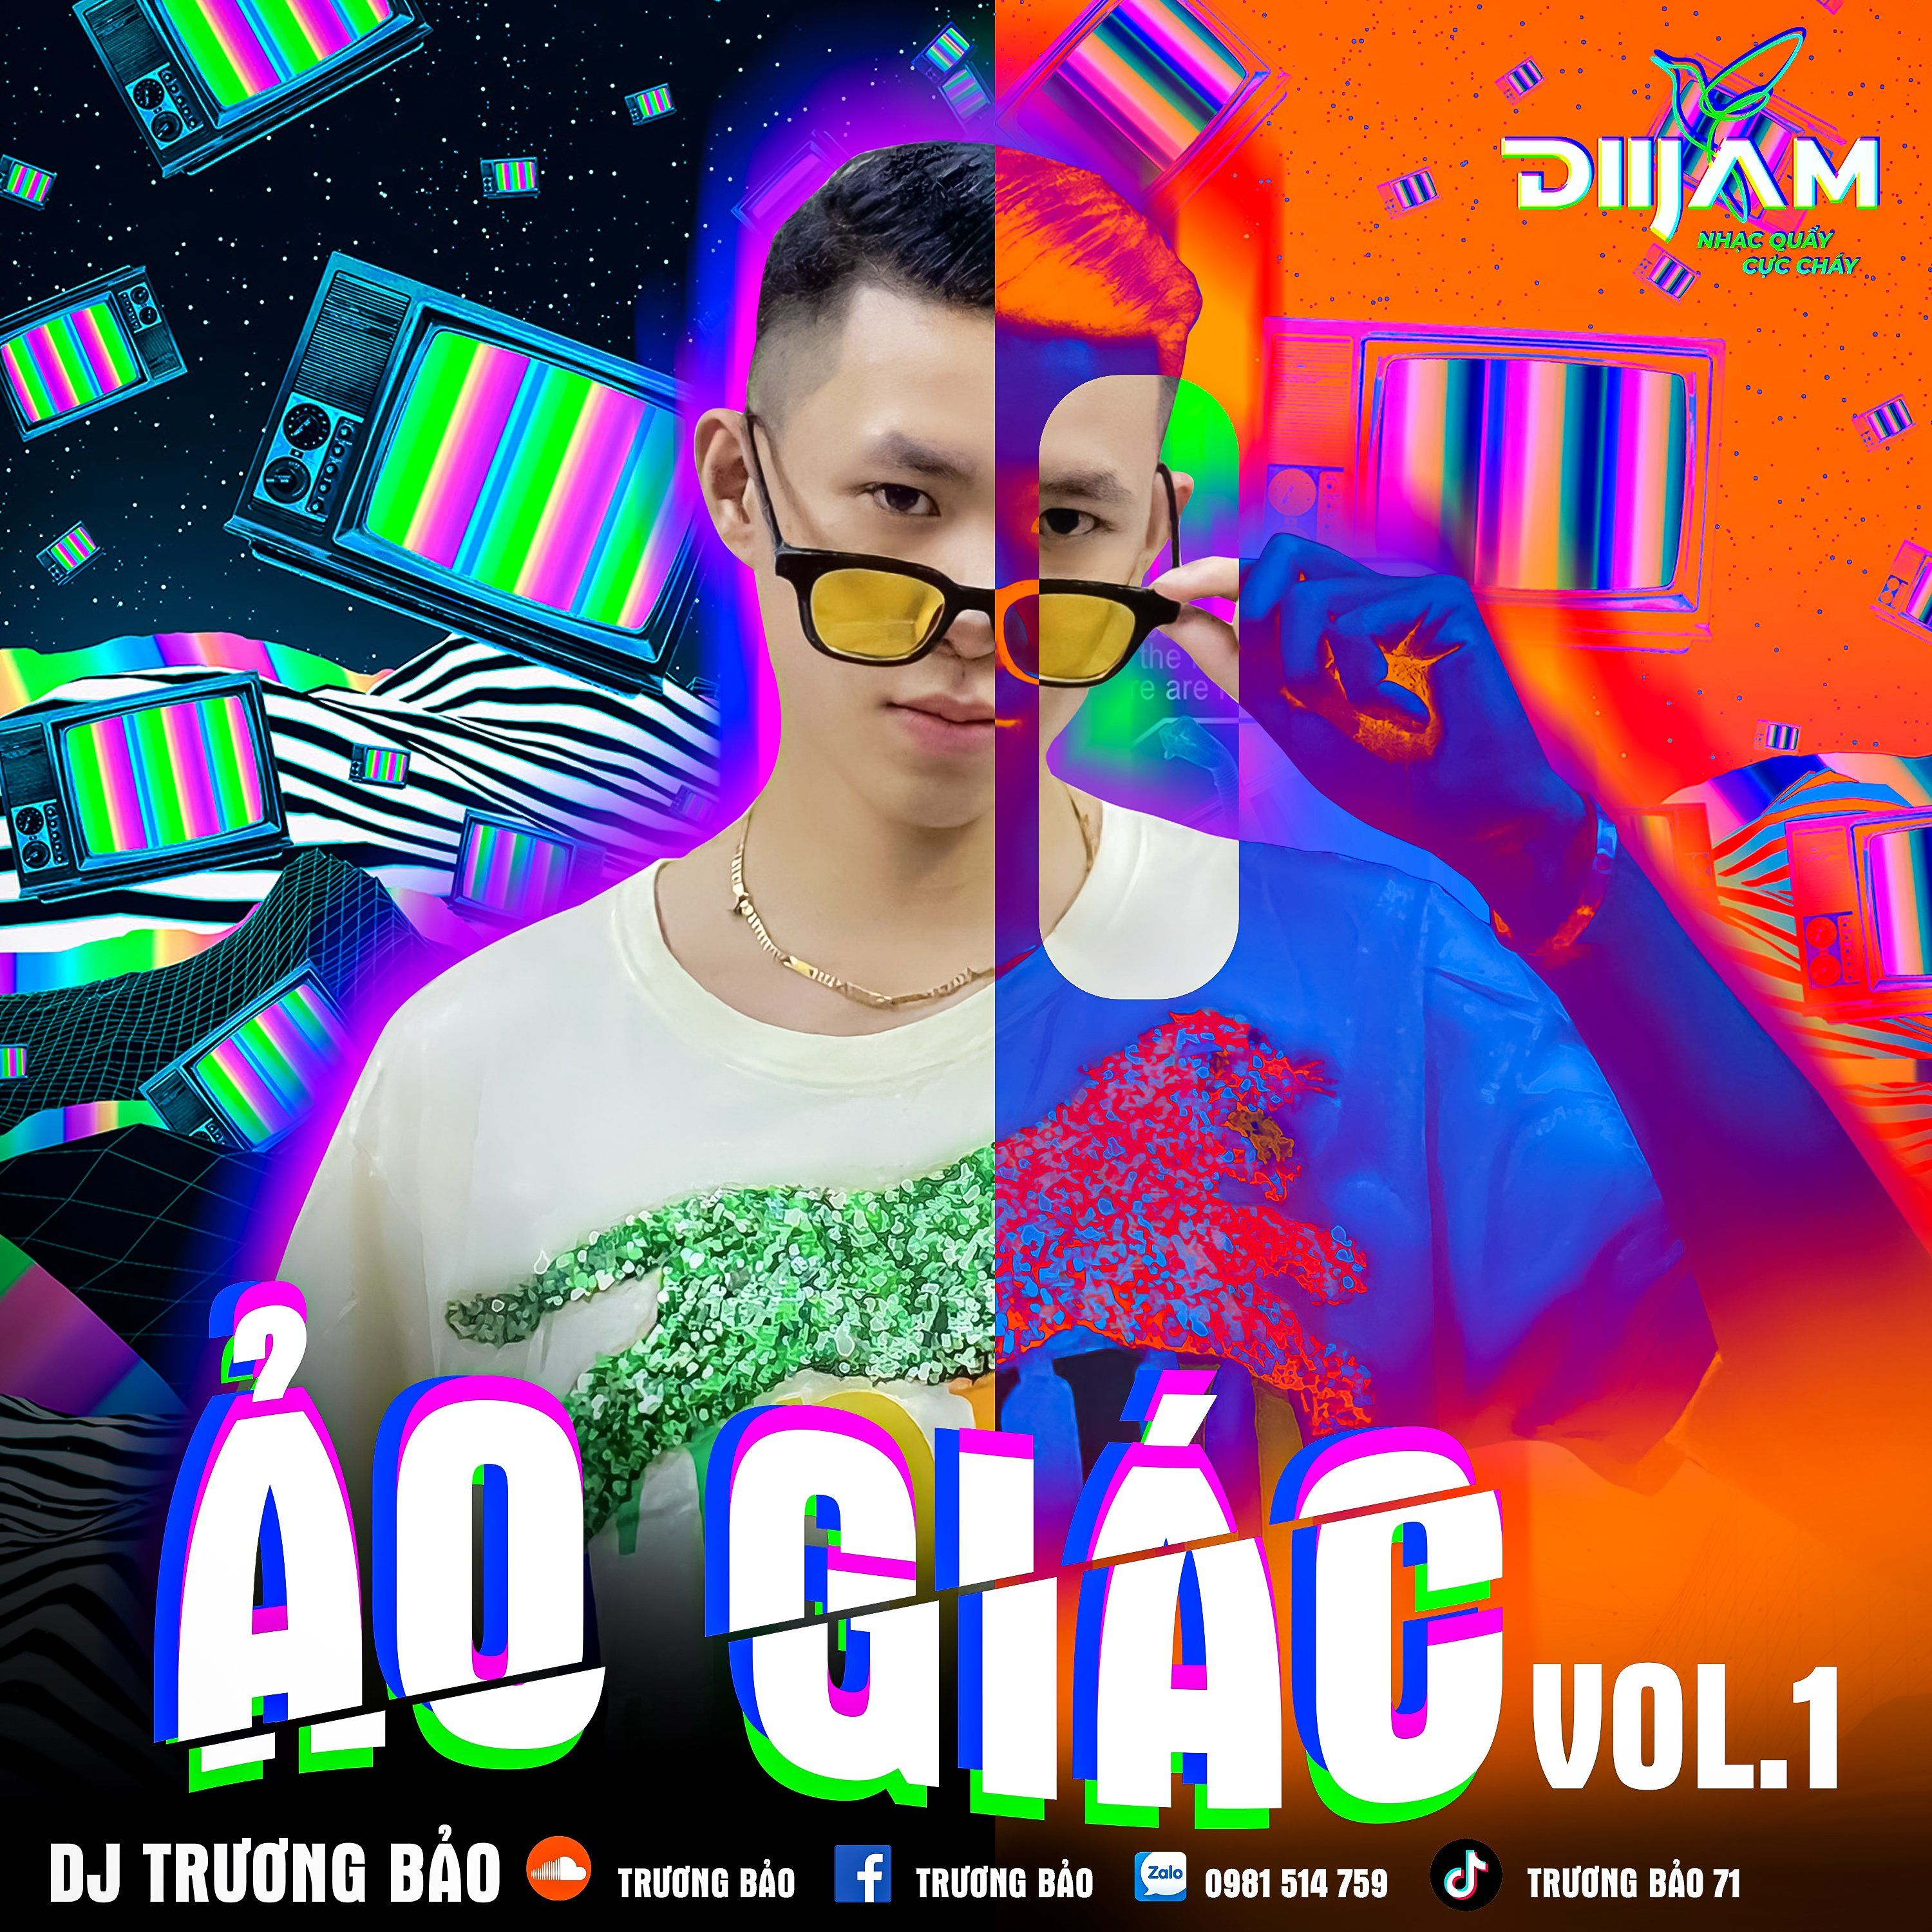 تحميل Ảo Giác Vol 1 - DJ Trương Bảo (Nonstop Diijam)